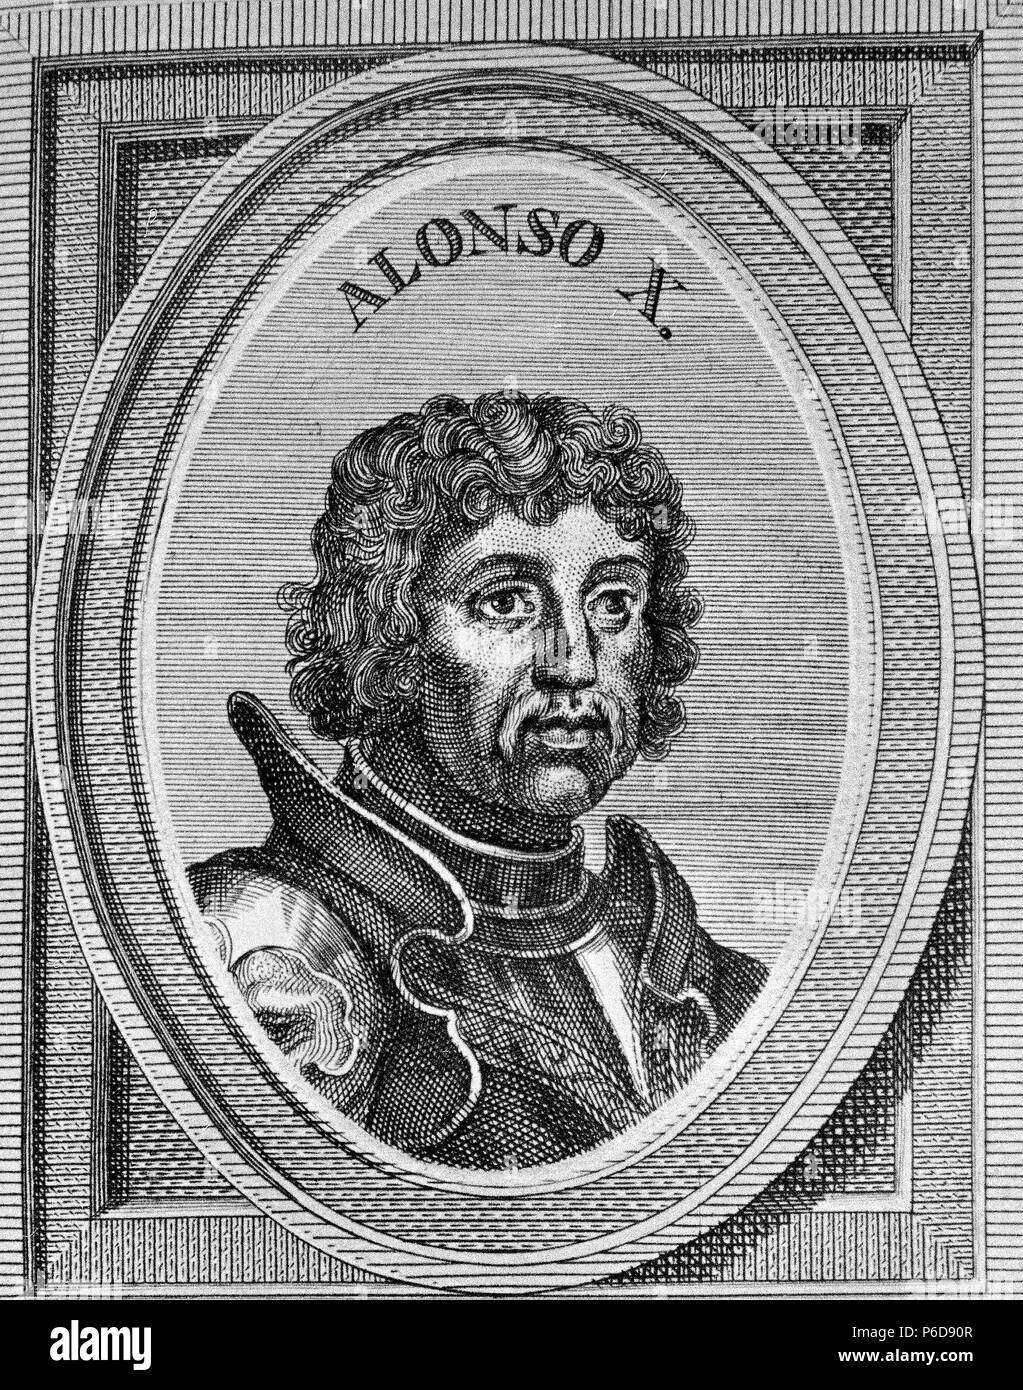 ALFONSO X ' EL SABIO '. REY DE CASTILLA Y LEON. TOLEDO 1221 - 1284. GRABADO RETRATO DE ARNOLDO VANWESTER , 1684. BIBLIOTECA NACIONAL. MADRID. Stock Photo